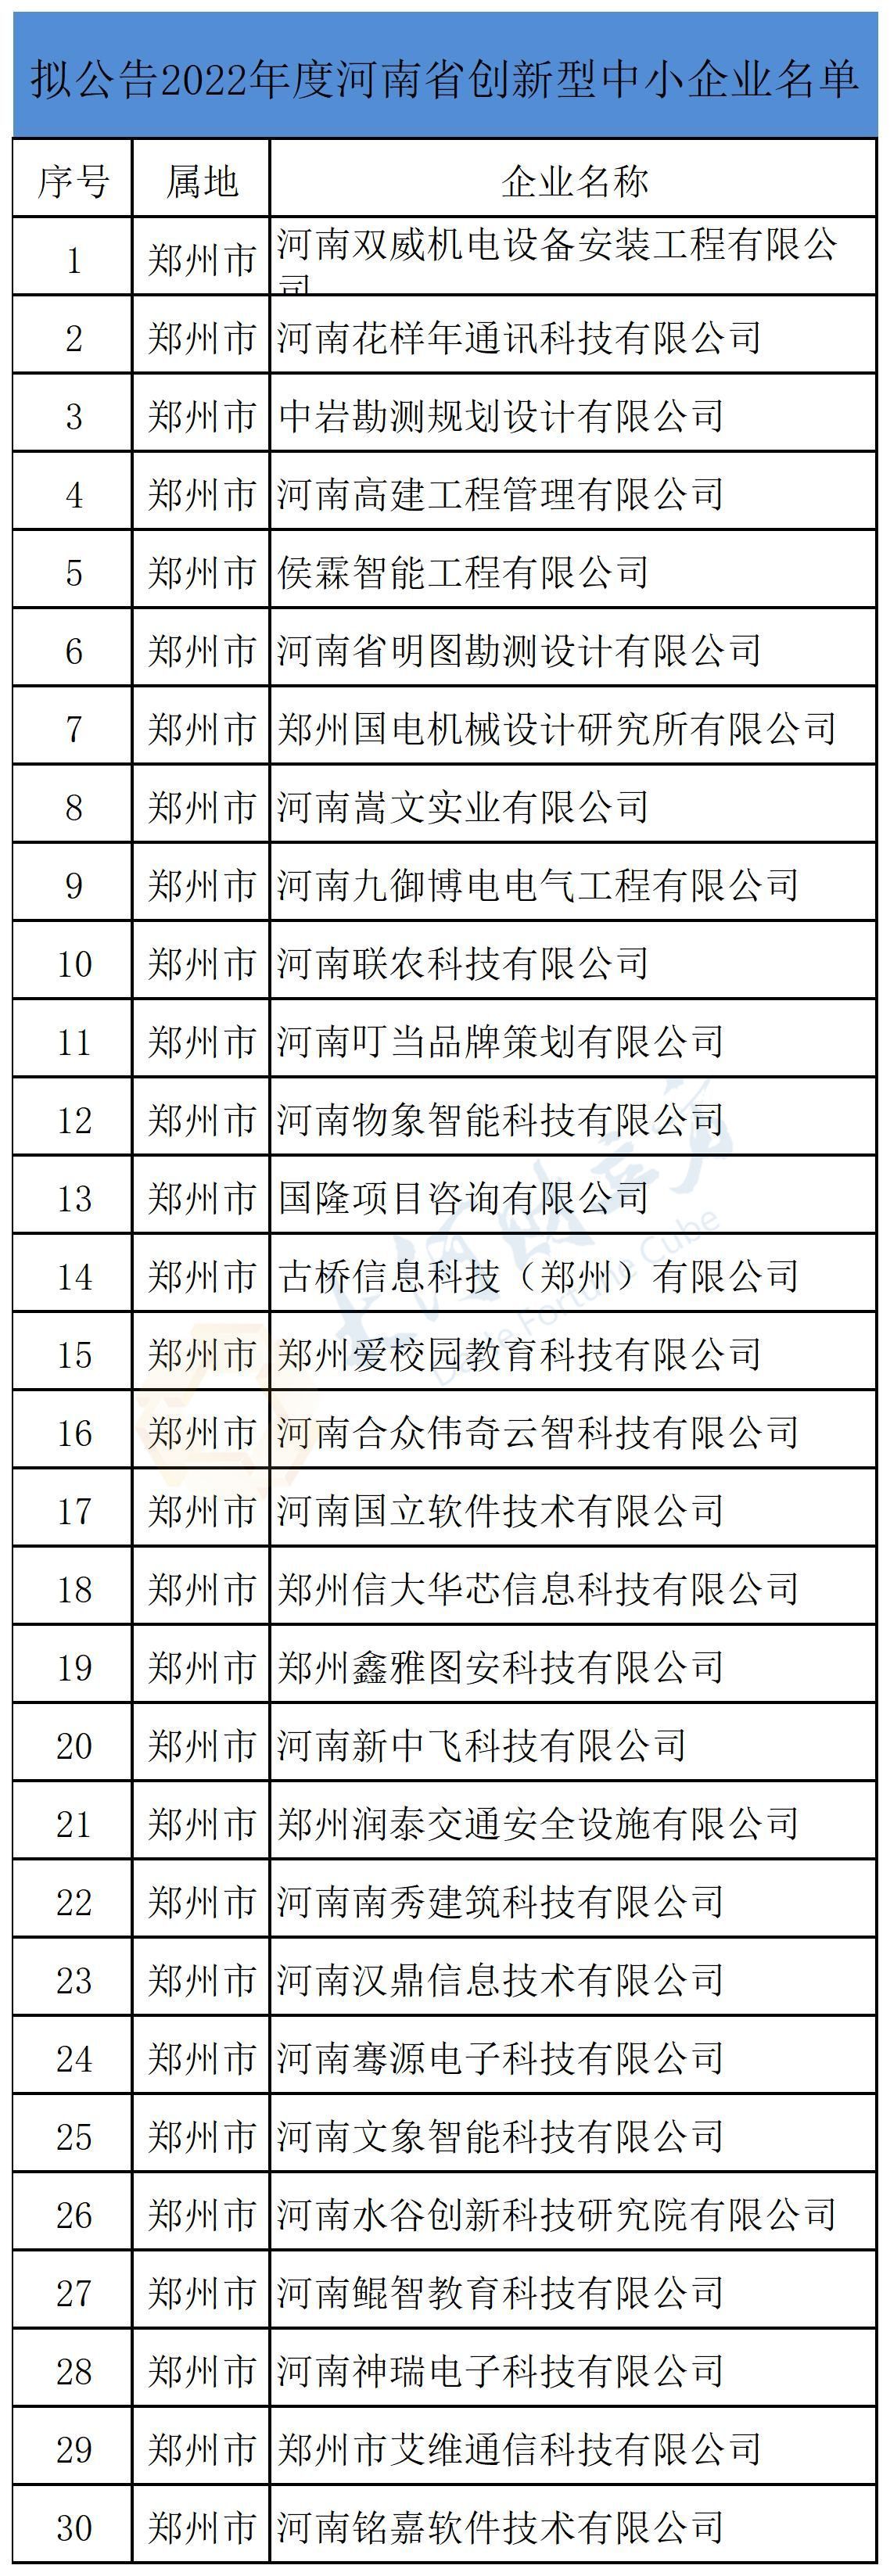 河南省公示拟备案创新型中小企业名单，7828家在列